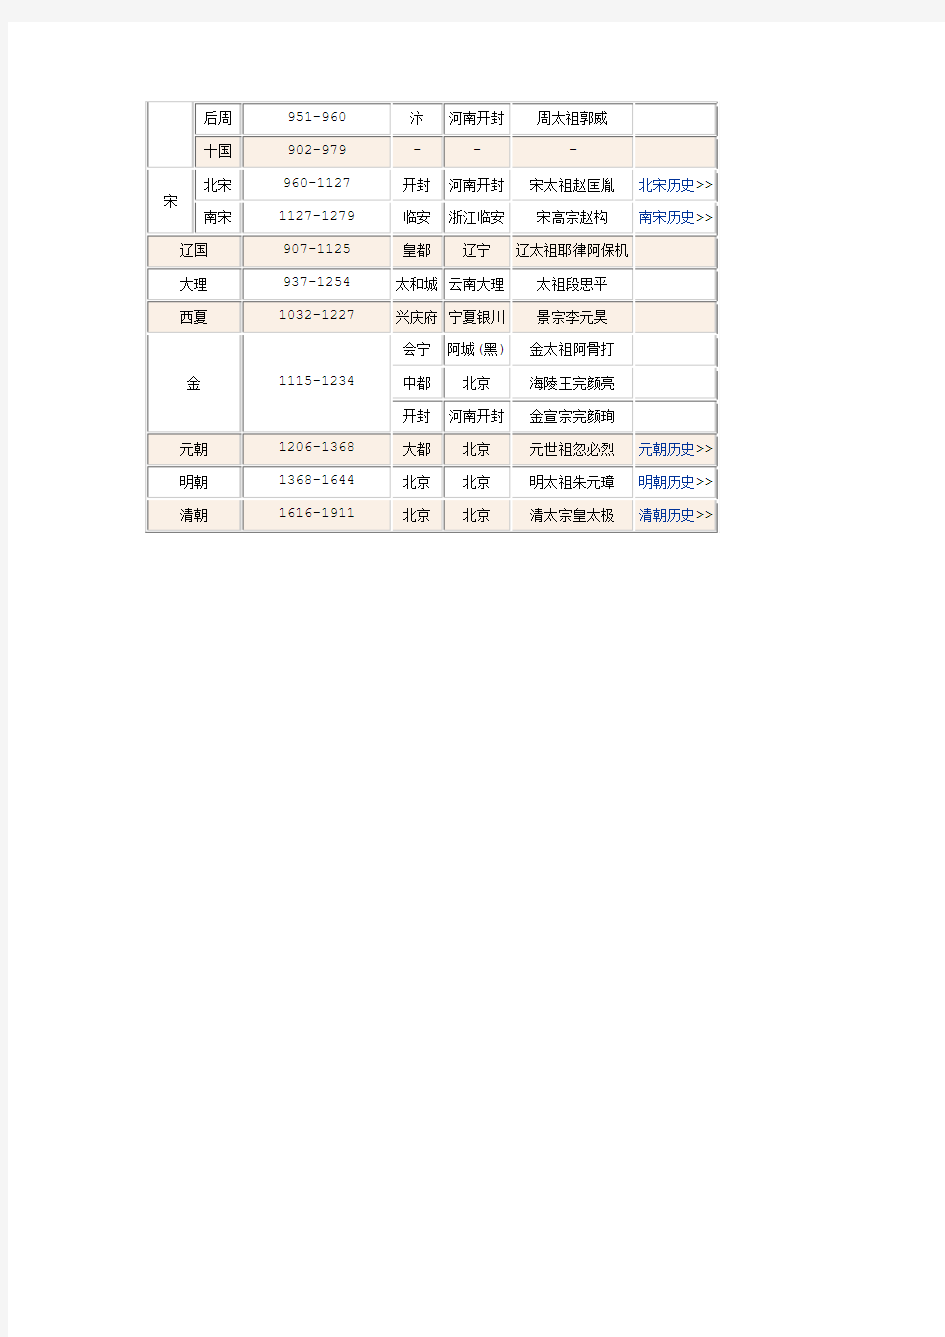 中国朝代顺序表、时间表